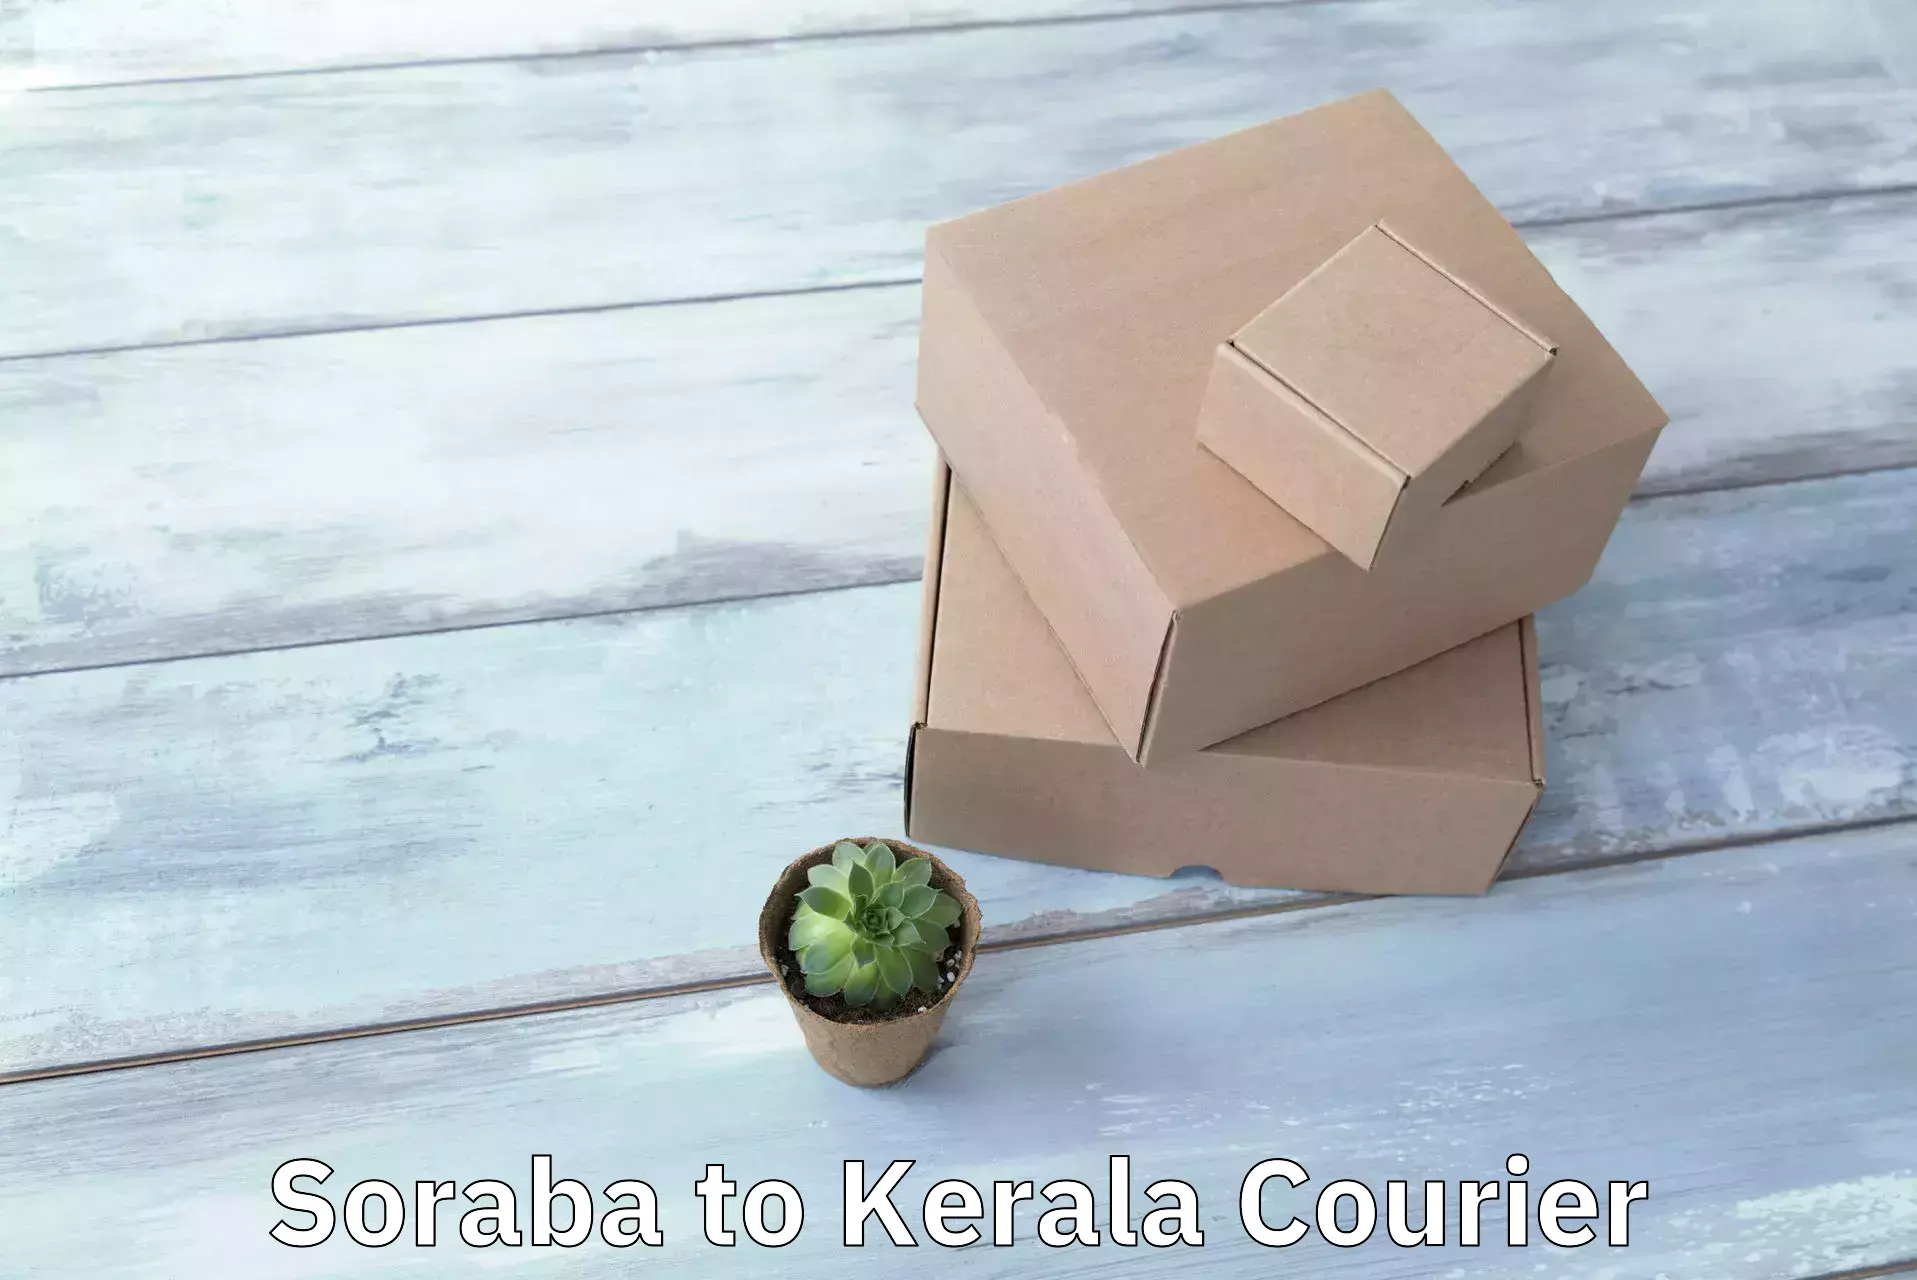 Urgent courier needs Soraba to Kerala